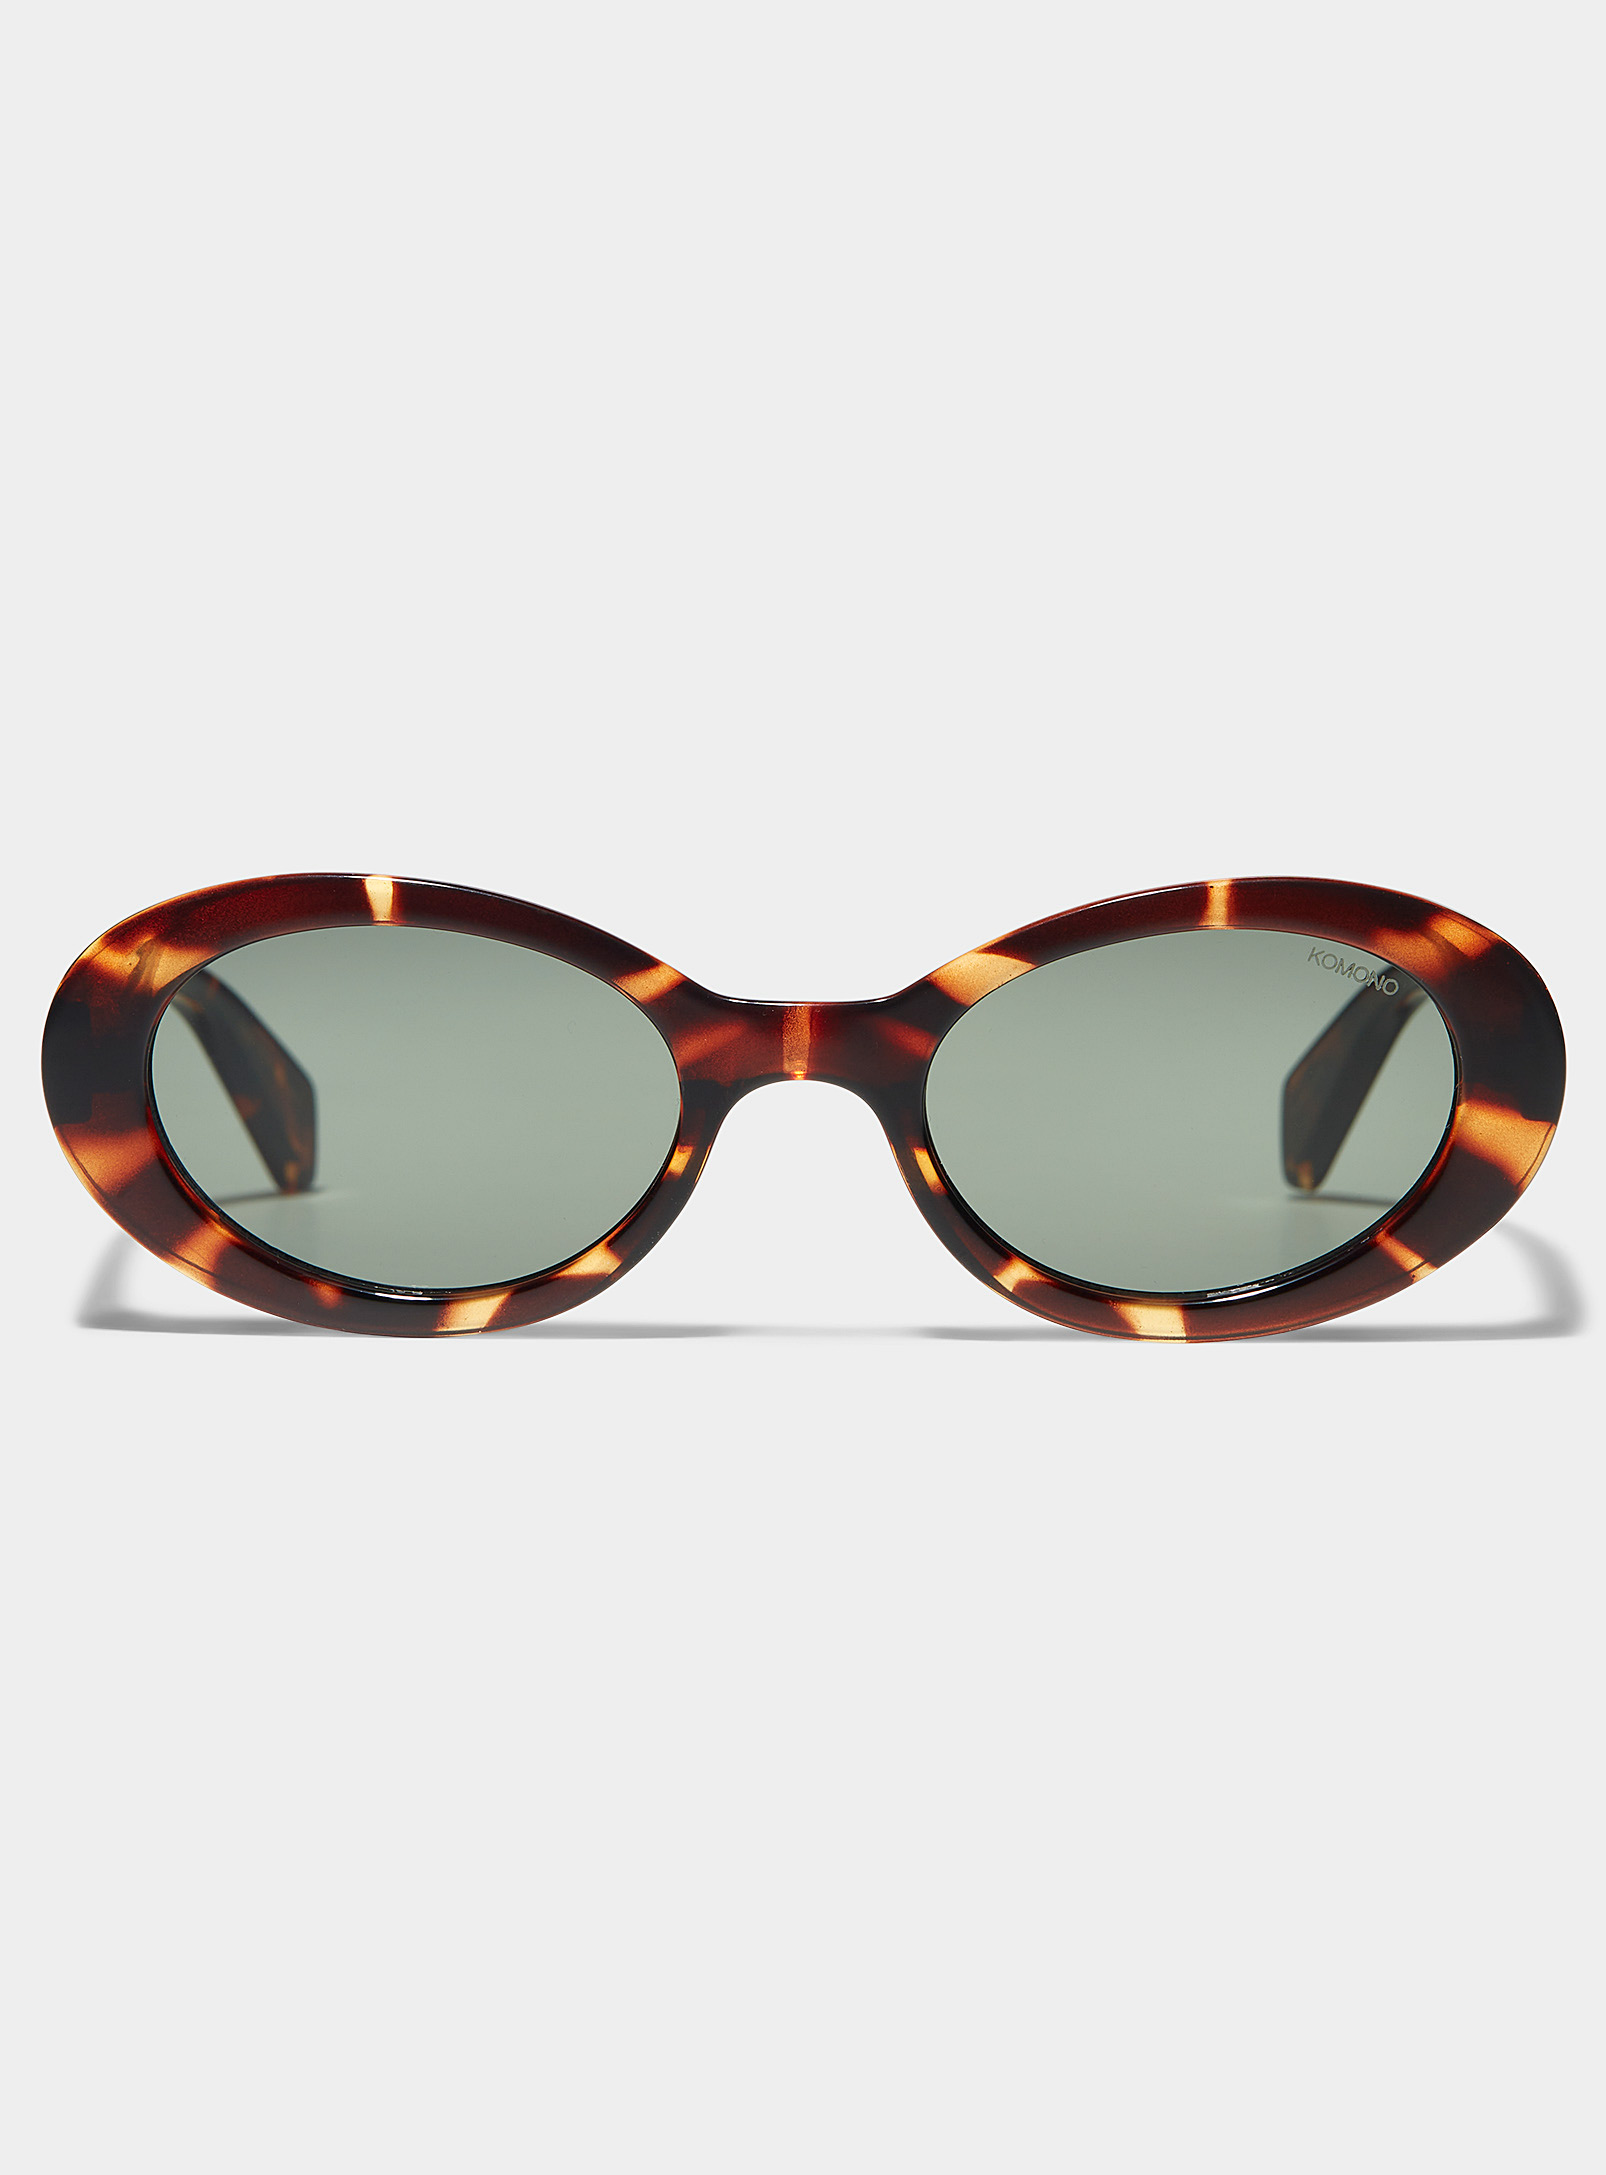 KOMONO - Les lunettes de soleil ovales Ana